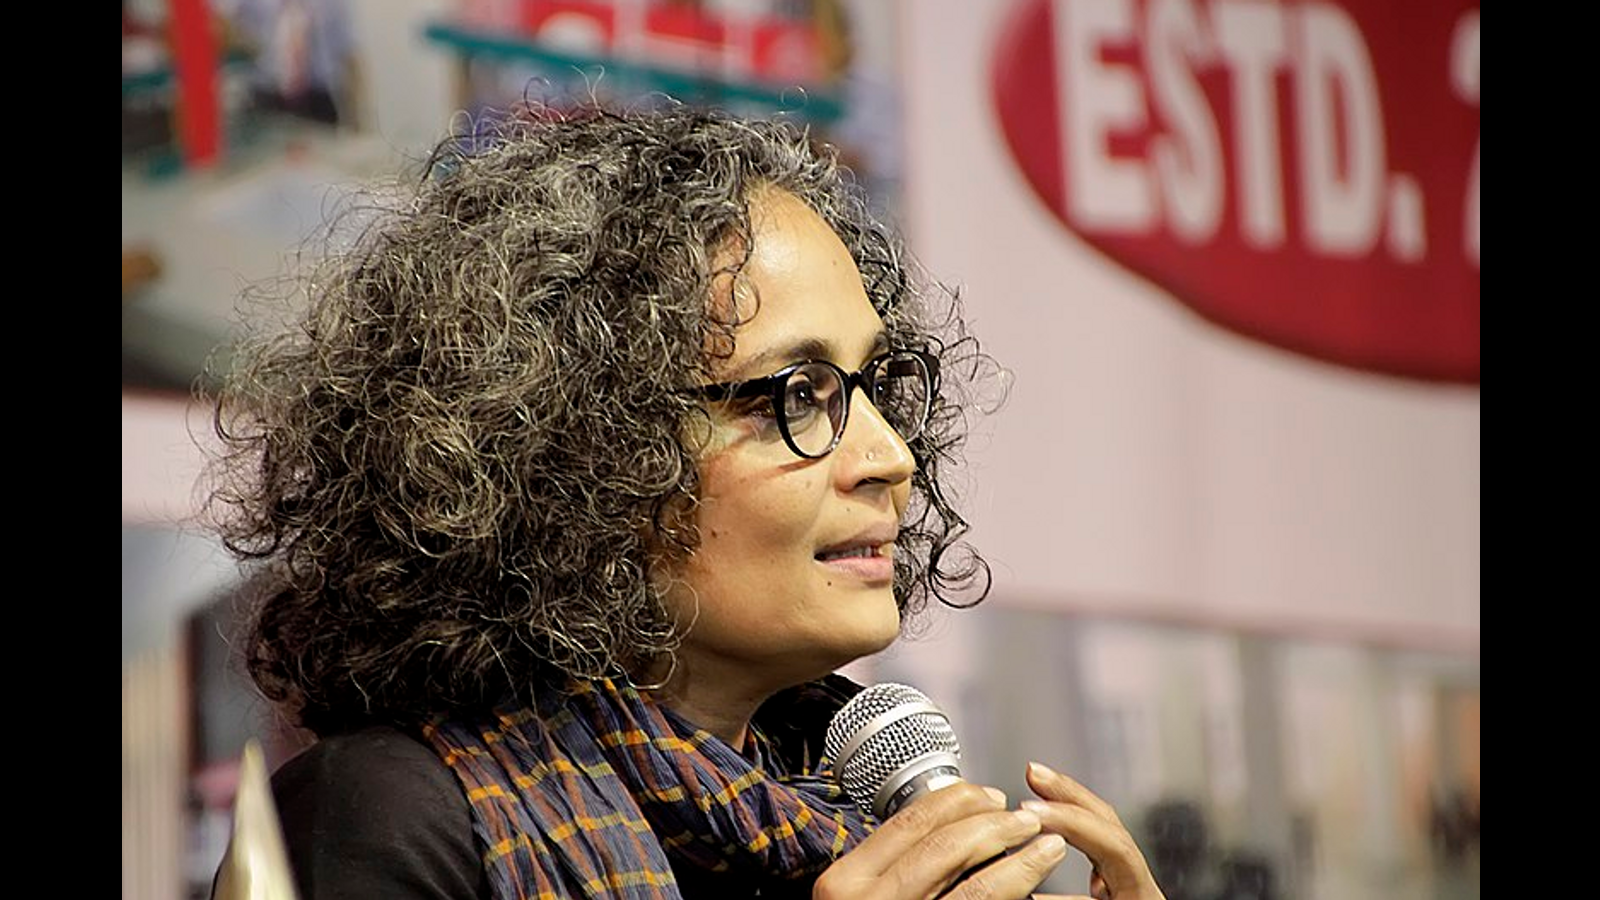 Modi-Regierung nimmt die gefeierte indische Schriftstellerin Arundhati Roy und kaschmirische Aktivistin wegen Äußerungen von 2010 strafrechtlich zur Verantwortung